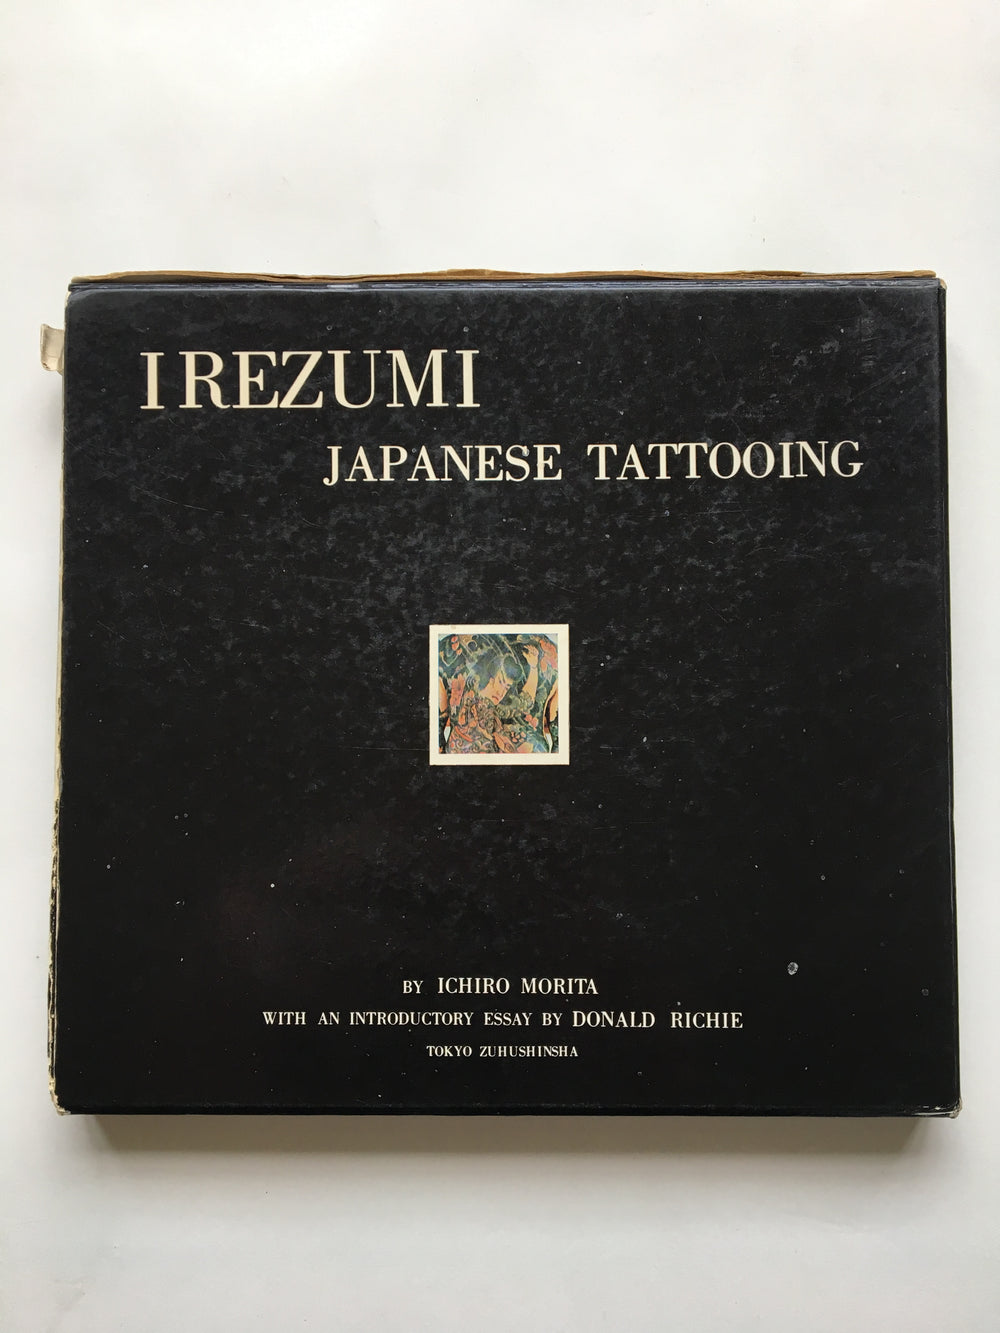 IREZUMI JAPANESE TATTOOING. By Ichiro Morita